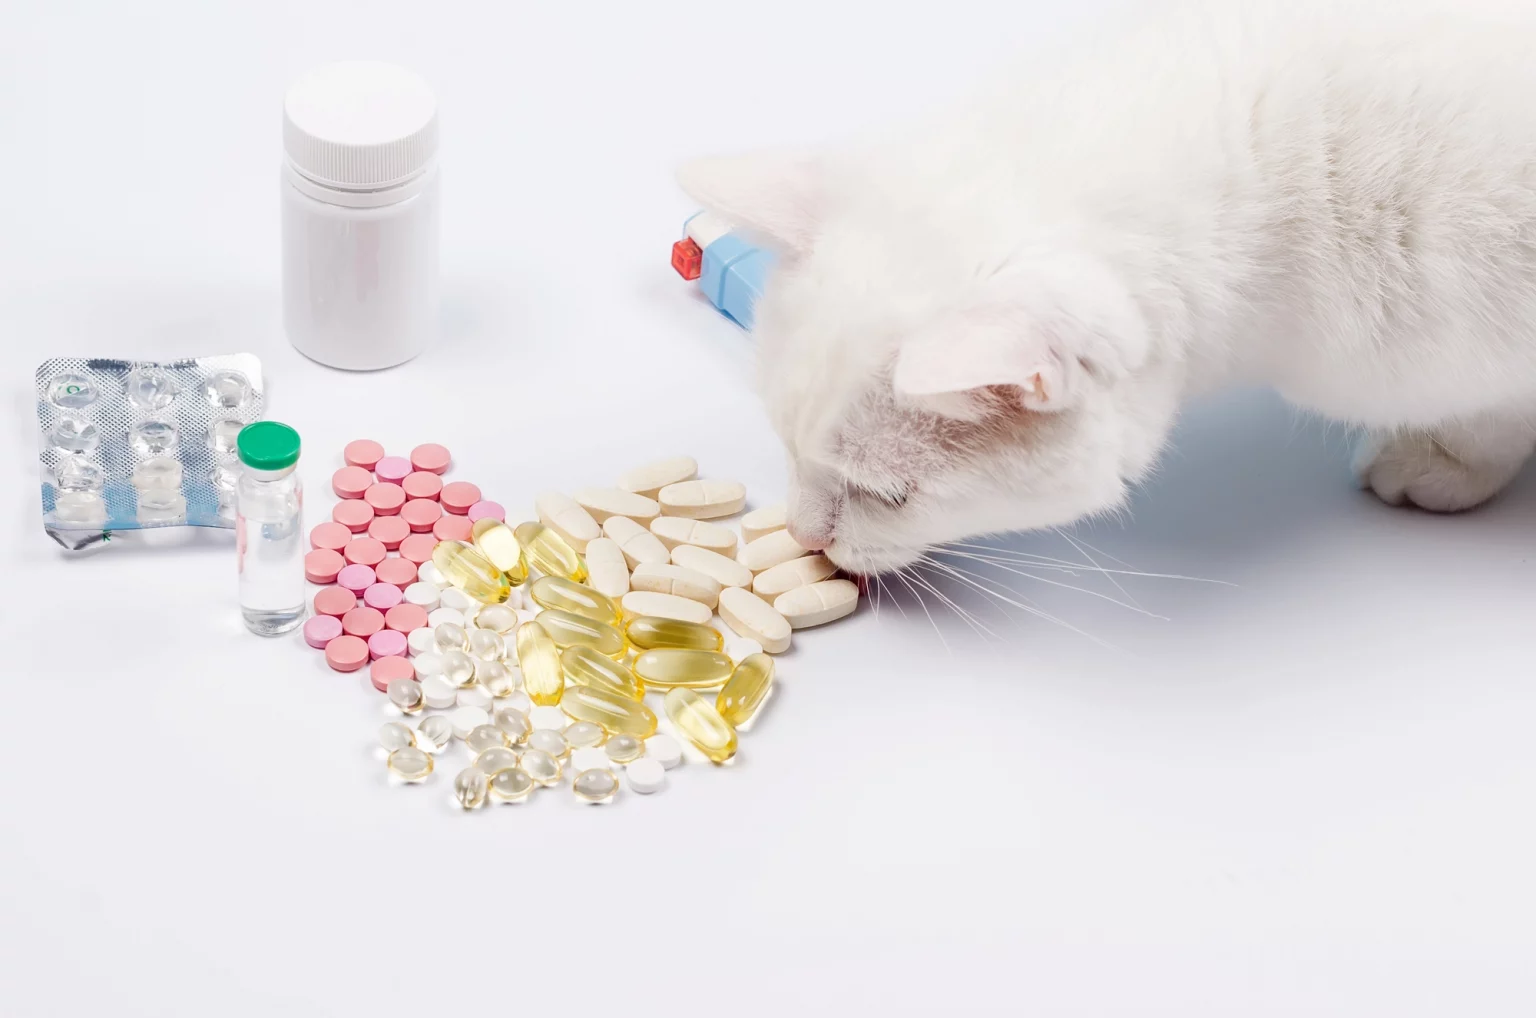 Une variété de suppléments et de vitamines pour animaux disposés sur une surface blanche, avec un chat blanc reniflant curieusement un amas de comprimés roses, blancs, et des gélules translucides remplies d'huile.